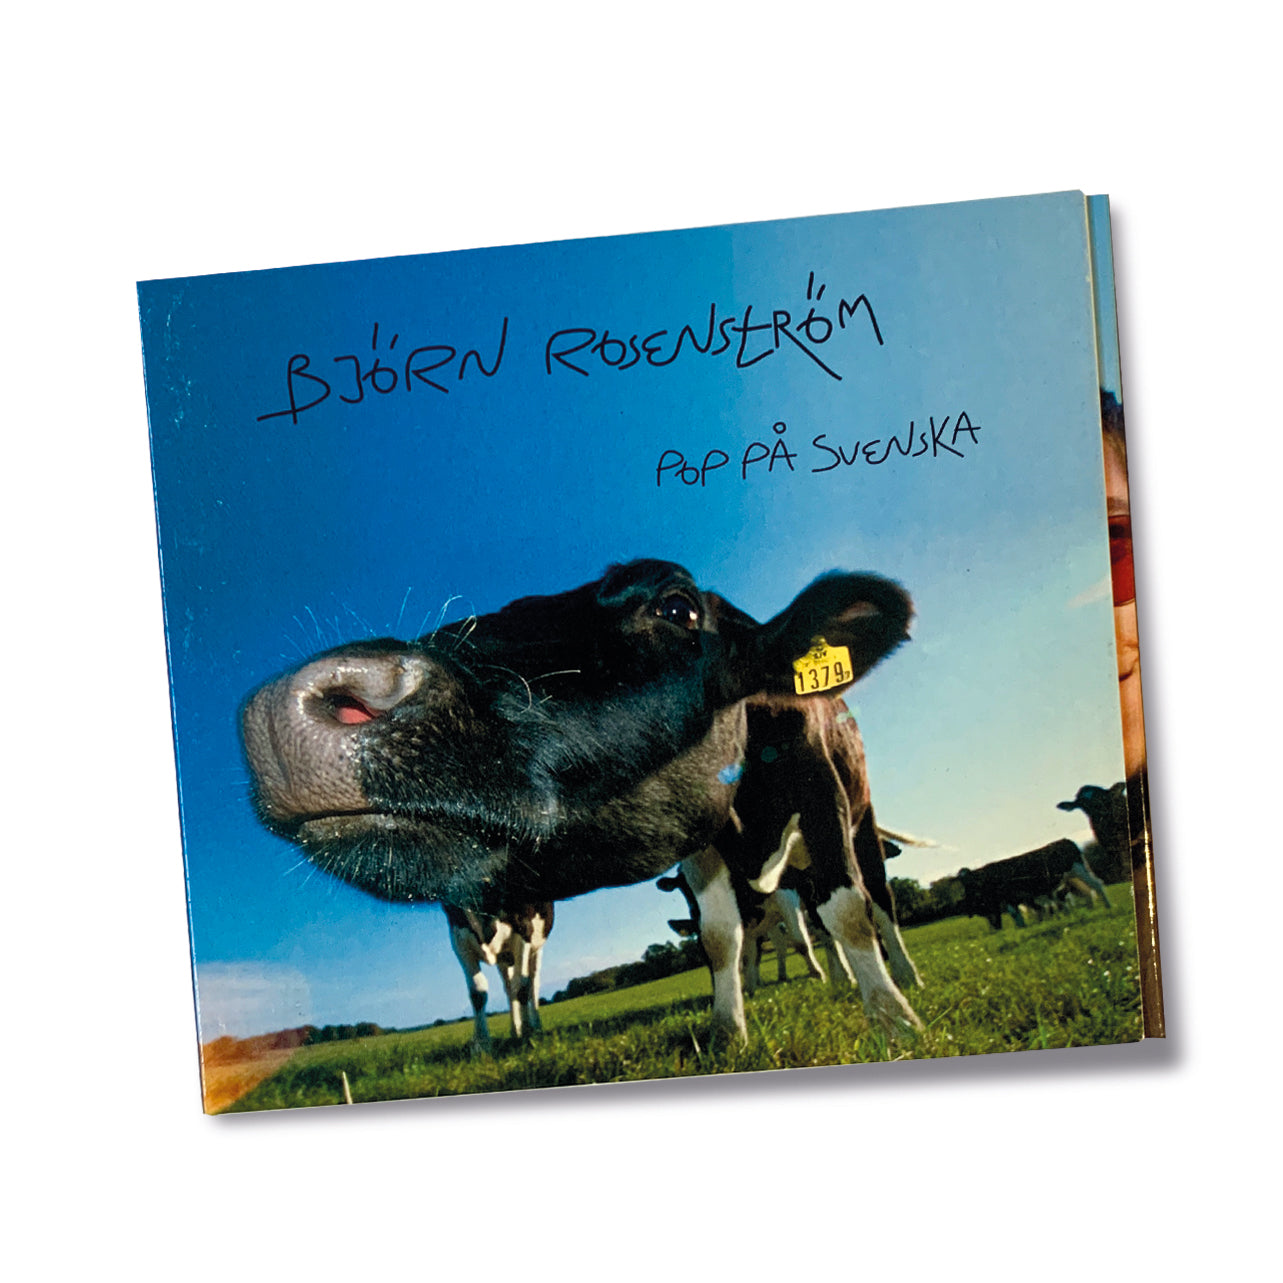 Pop på svenska Album-CD